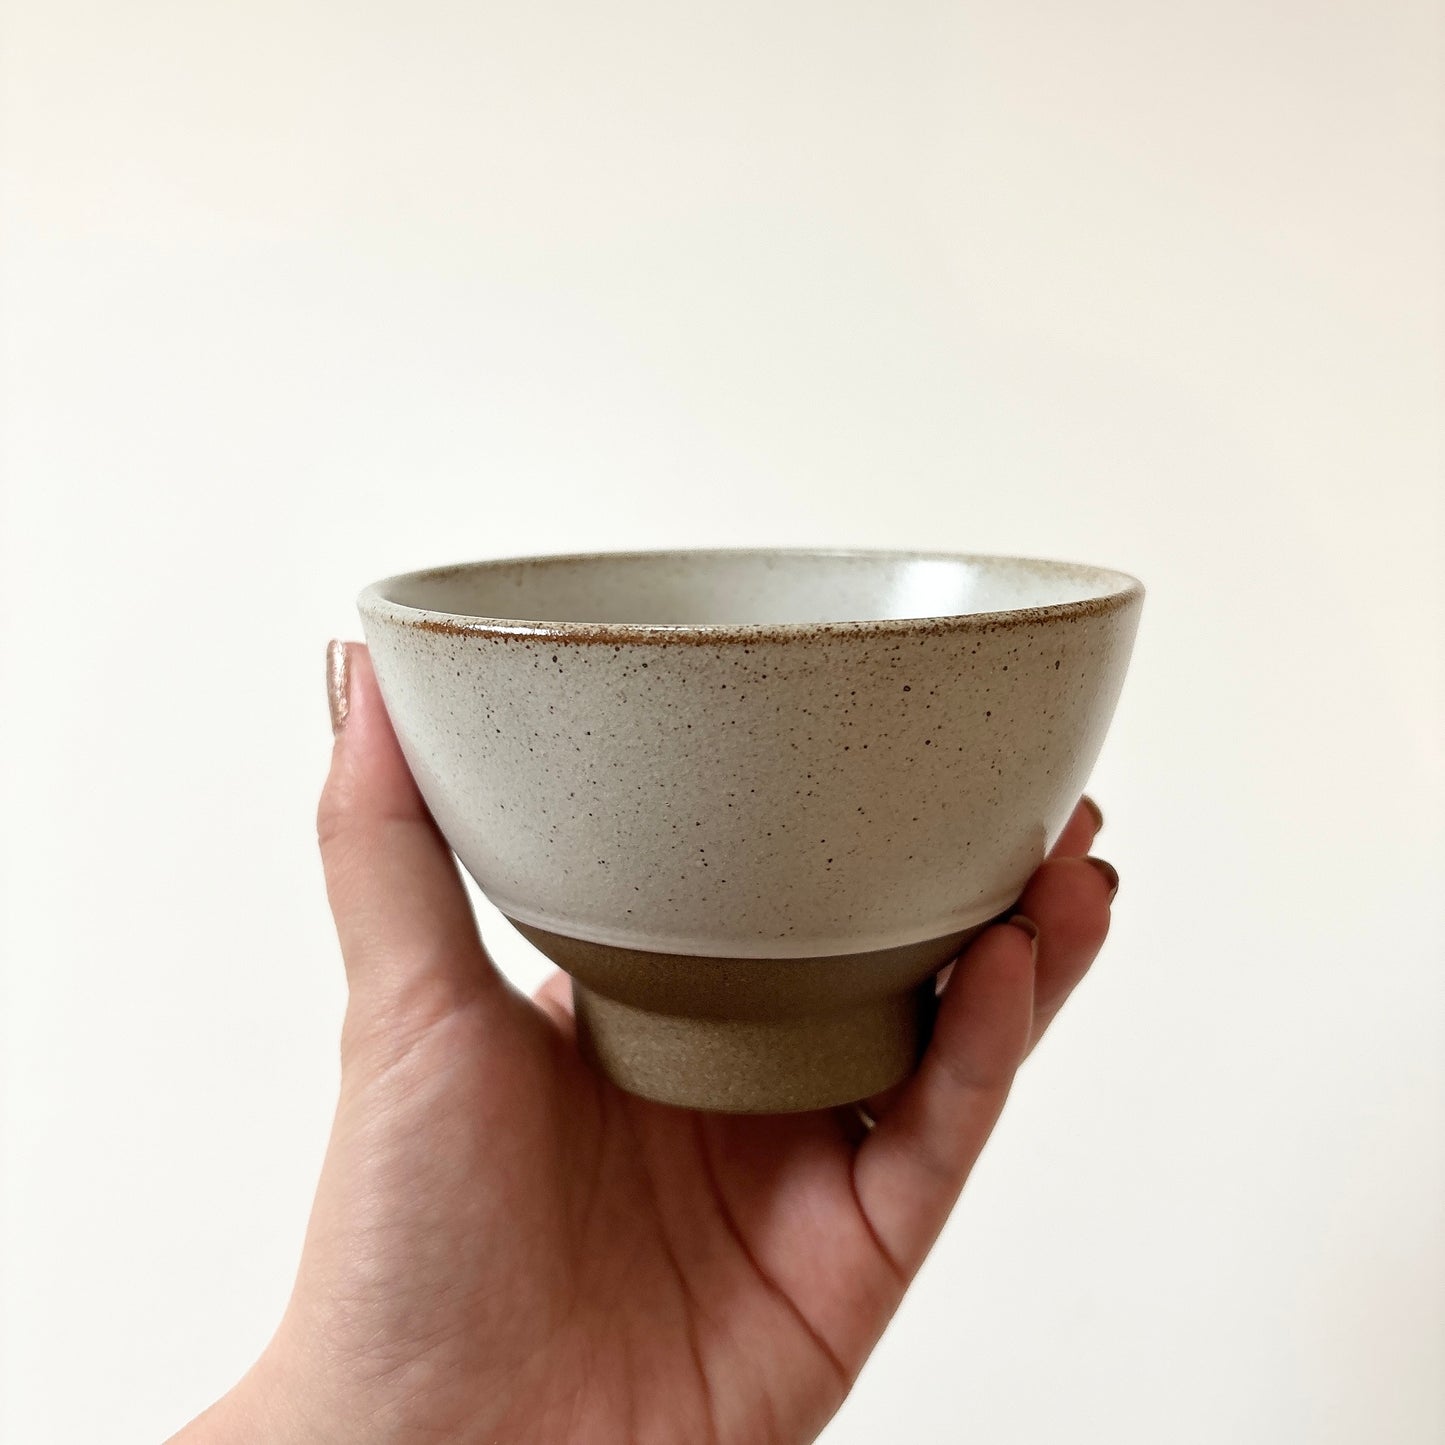 eureka rice bowl